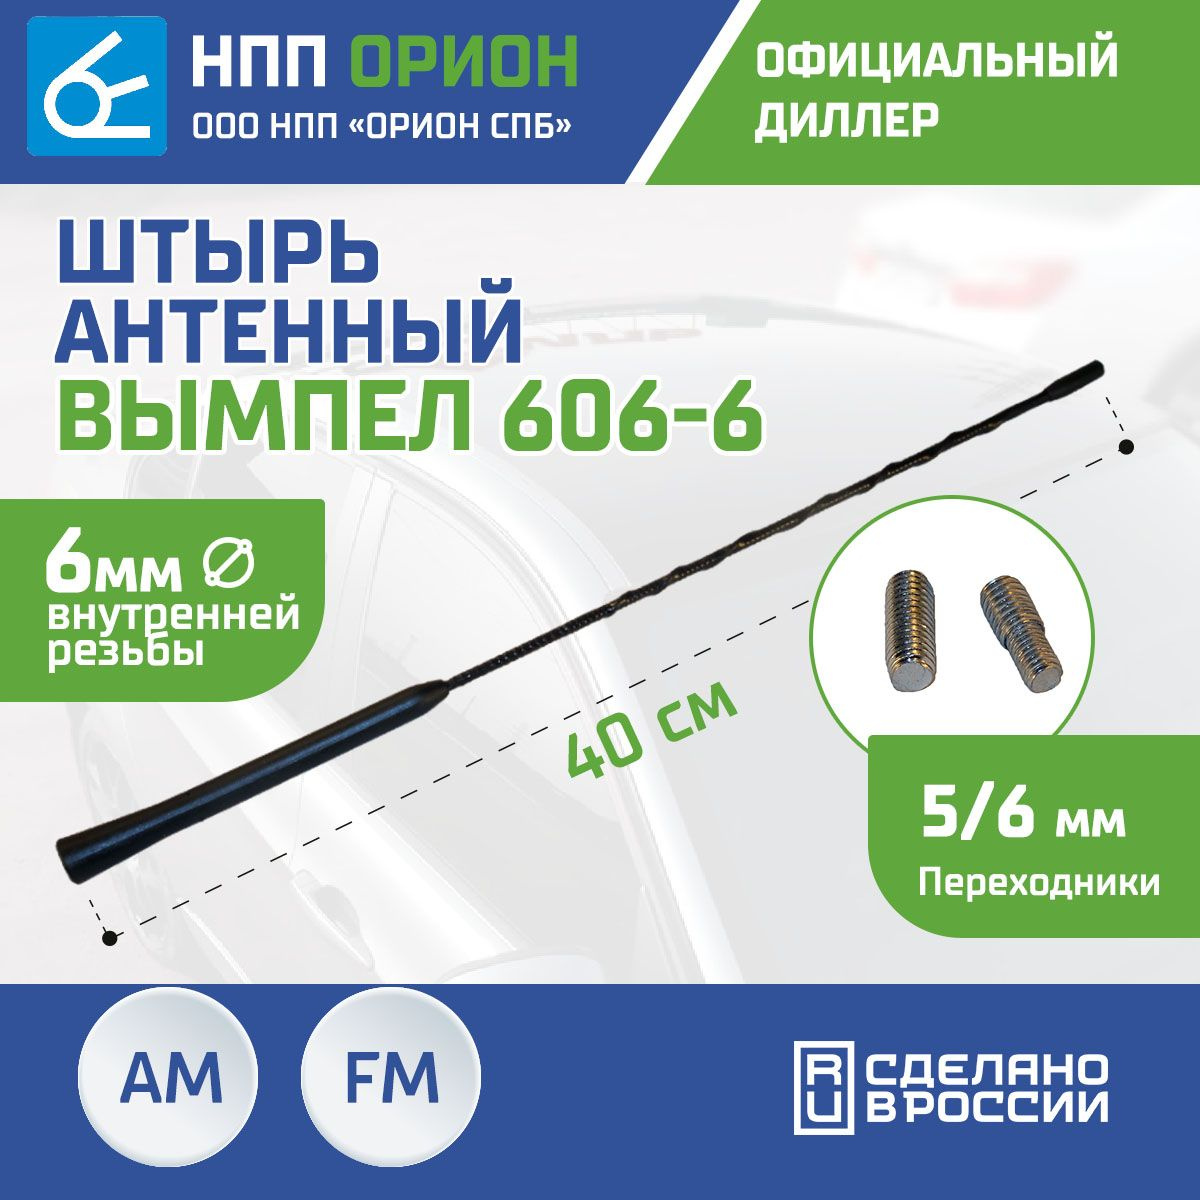 Антенна автомобильная Вымпел 606-6 (40см, 6мм) ( FM,АМ,ДВ,СВ,МВ )